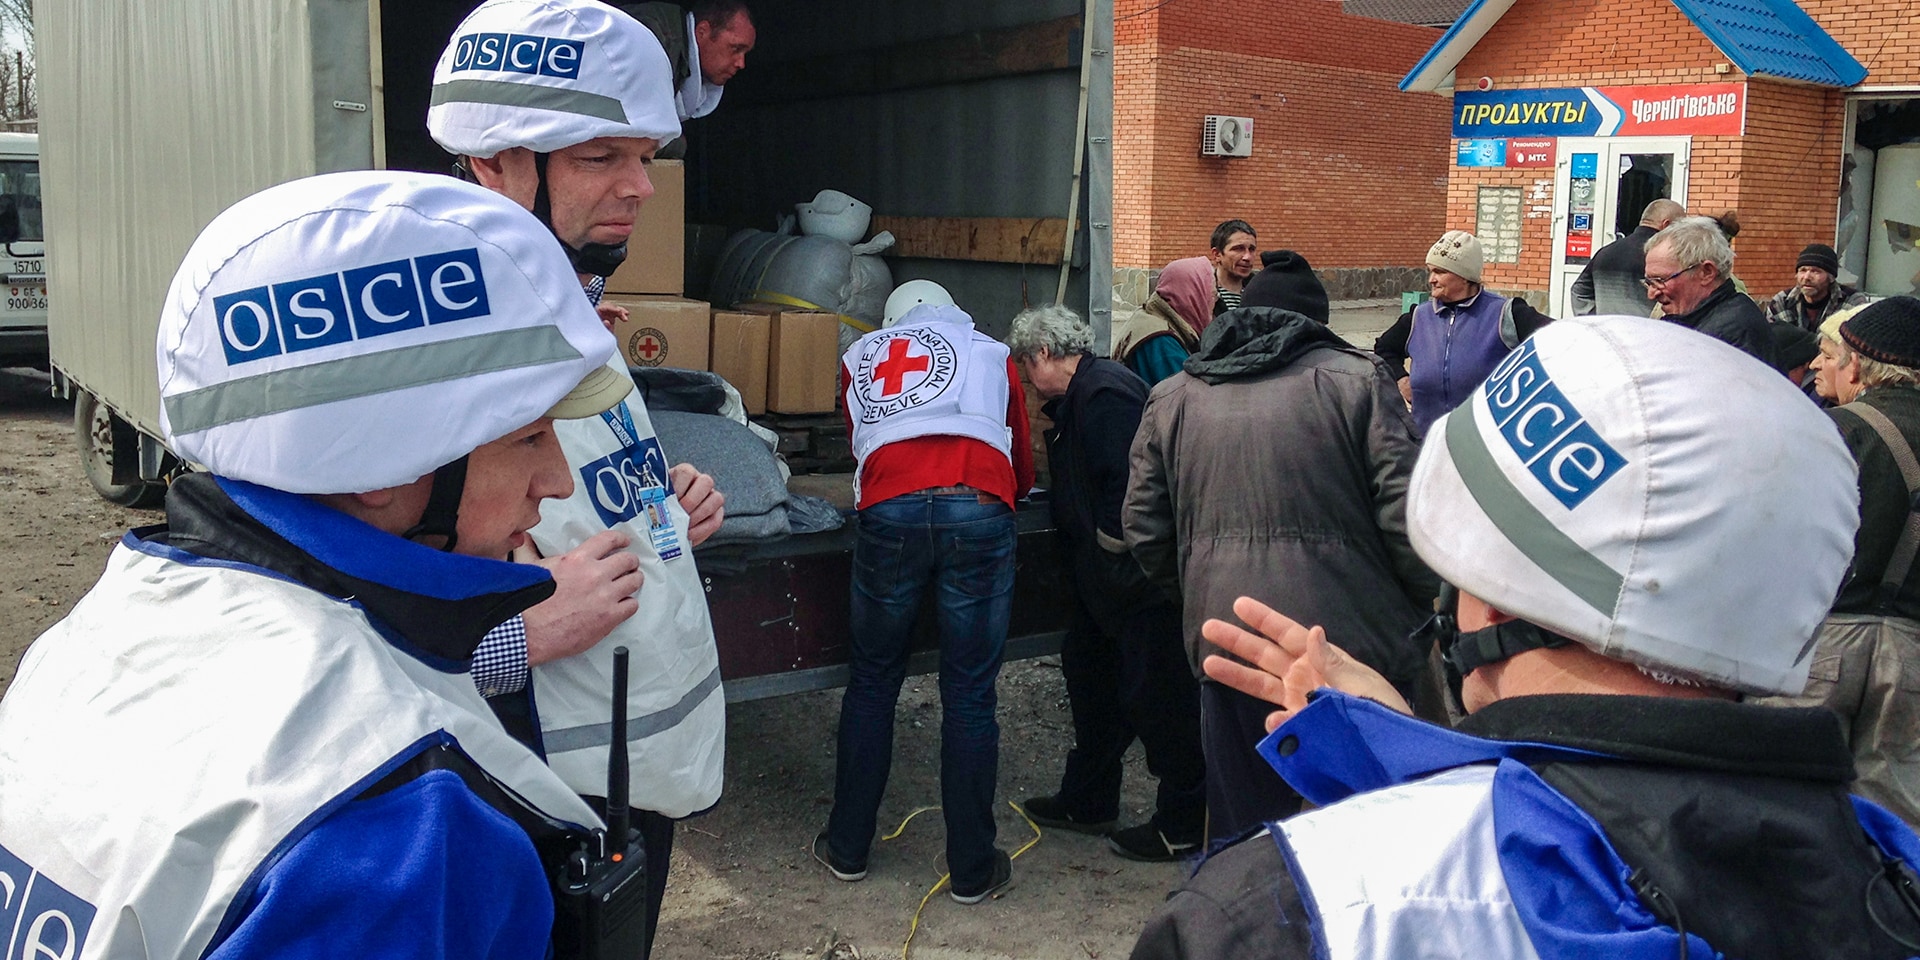  Tre membri della missione dell’OSCE controllano la consegna di pacchi contenenti aiuti alla popolazione ucraina.